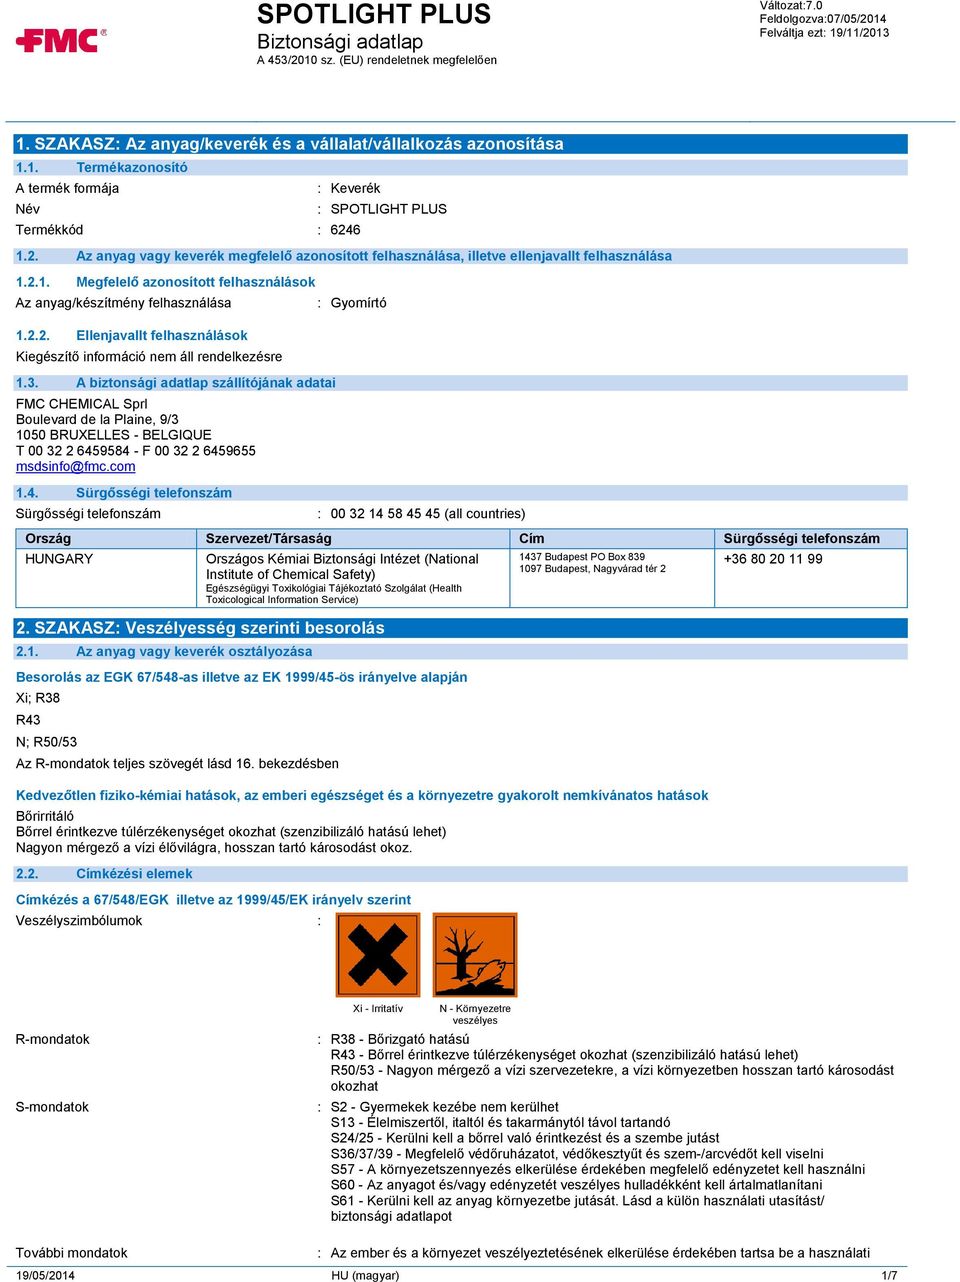 3. A biztonsági adatlap szállítójának adatai FMC CHEMICAL Sprl Boulevard de la Plaine, 9/3 1050 BRUXELLES - BELGIQUE T 00 32 2 645